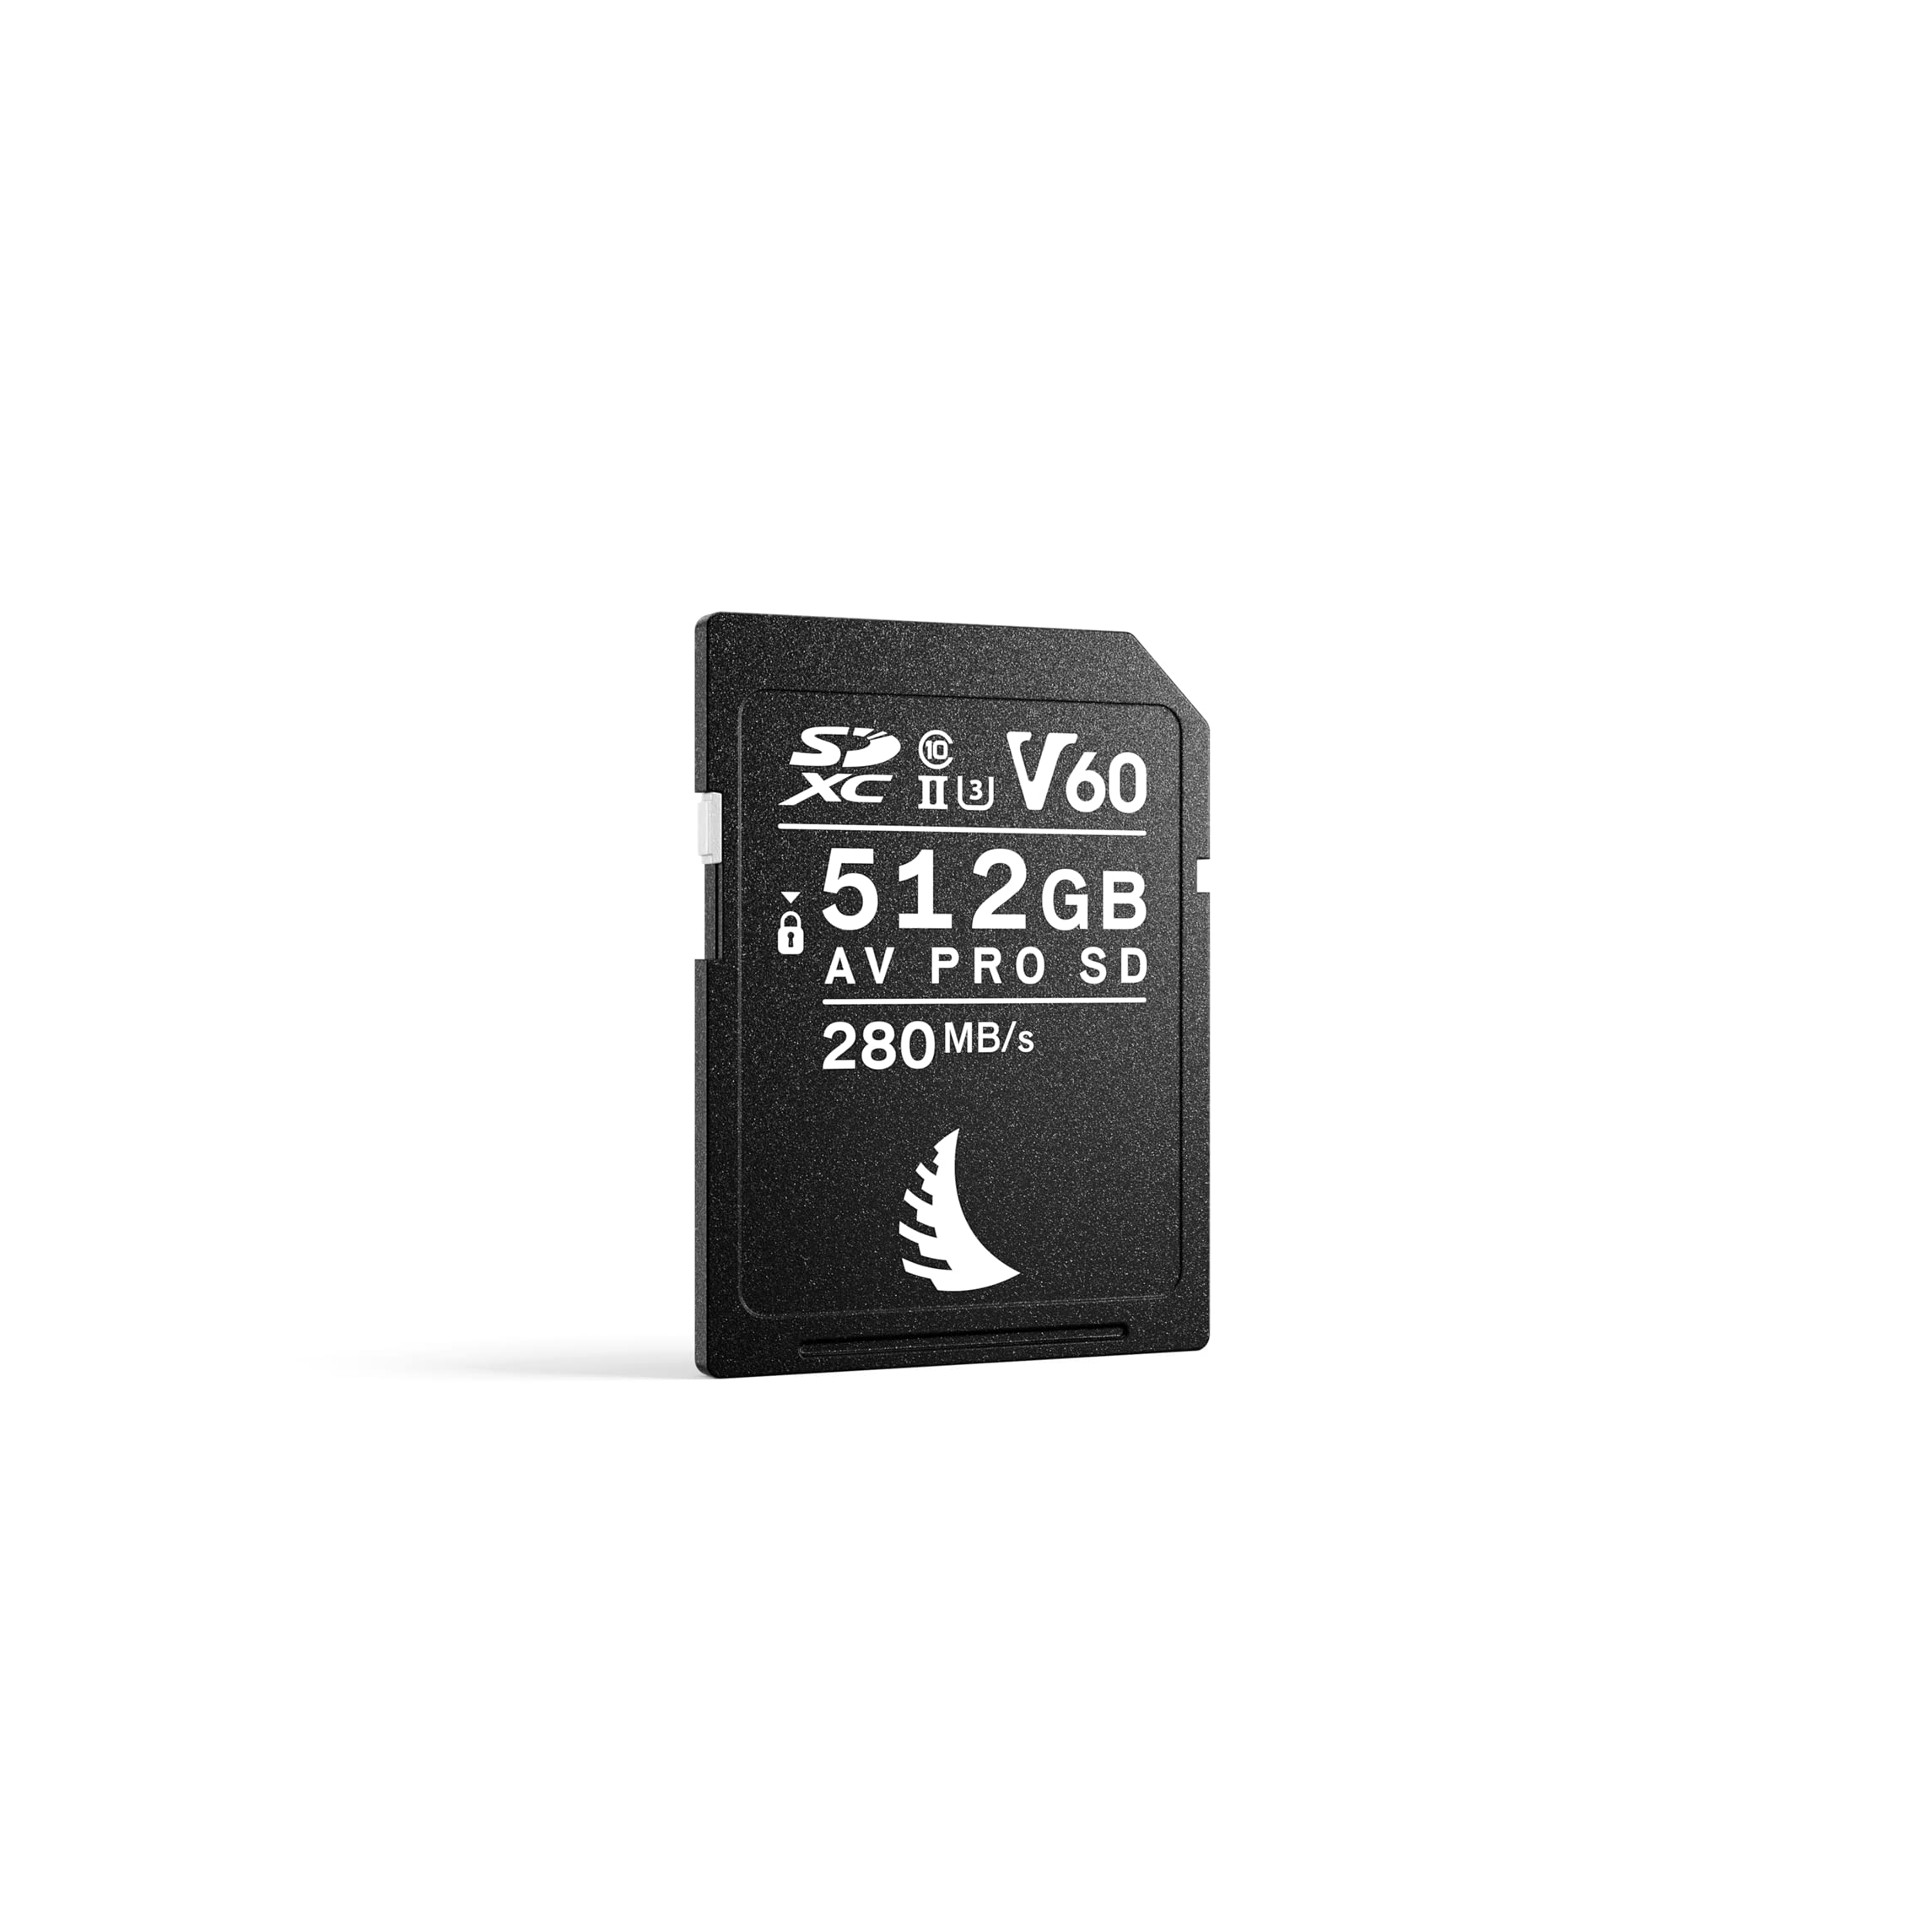 Angelbird - AV PRO SD V60 MK2-512 GB - SDXC UHS-II Speicherkarte - Weitgehend kompatibel - bis zu 6K - für hochauflösende Fotografie, Serienaufnahmen und leichte Videoproduktion